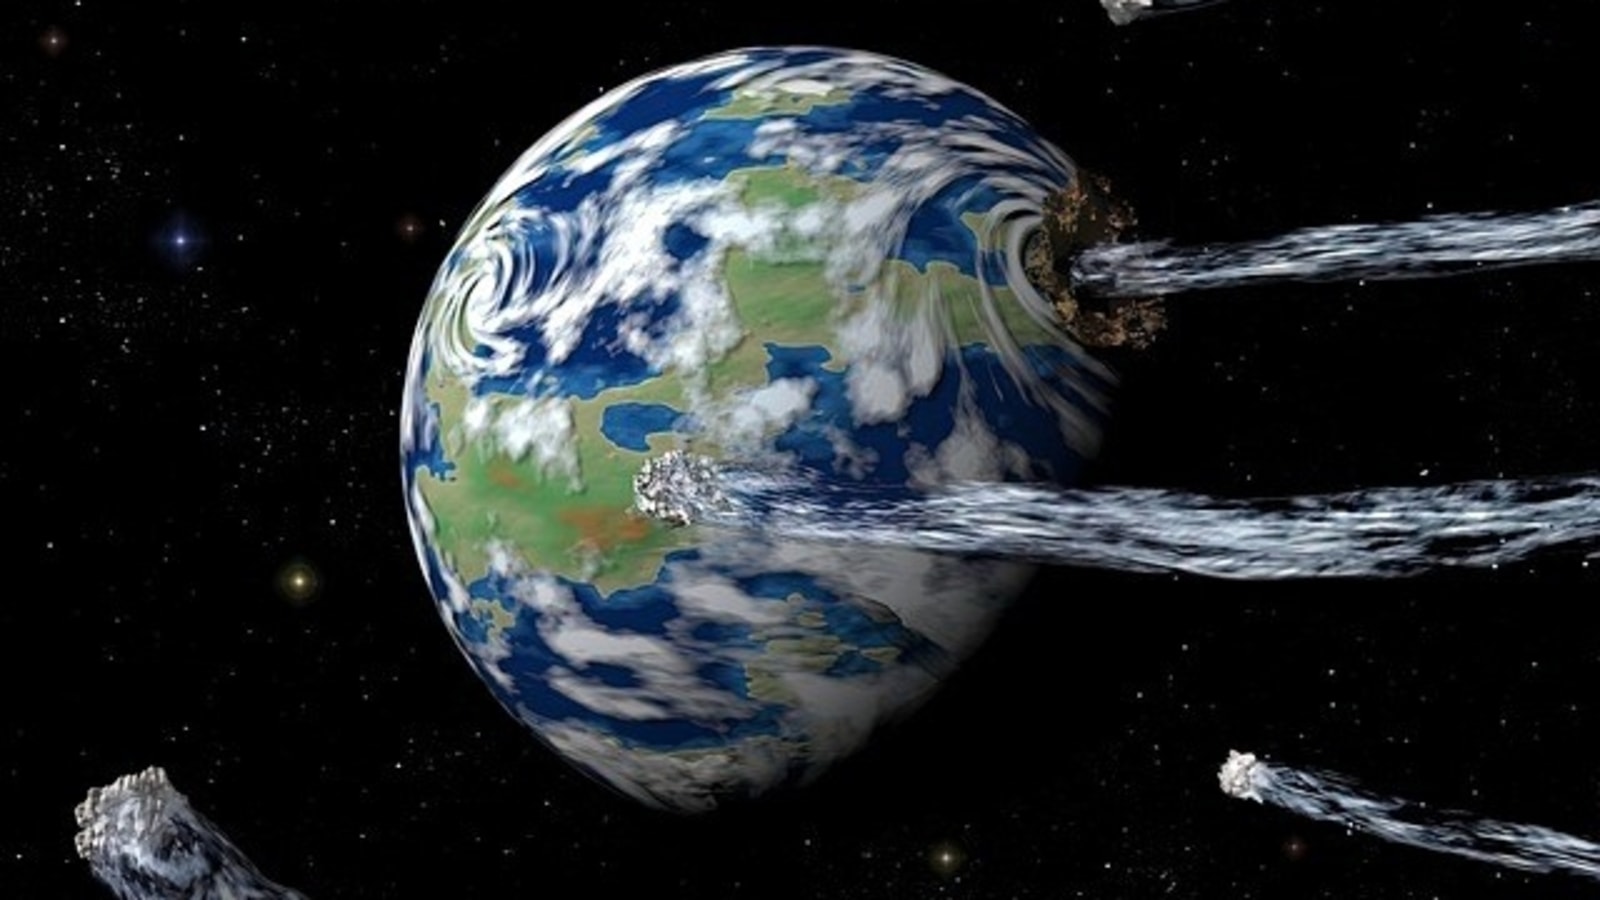 Астероид высотой 1600 футов, больше Эмпайр Стейт Билдинг, приближается к Земле со скоростью 34 279 км в час!